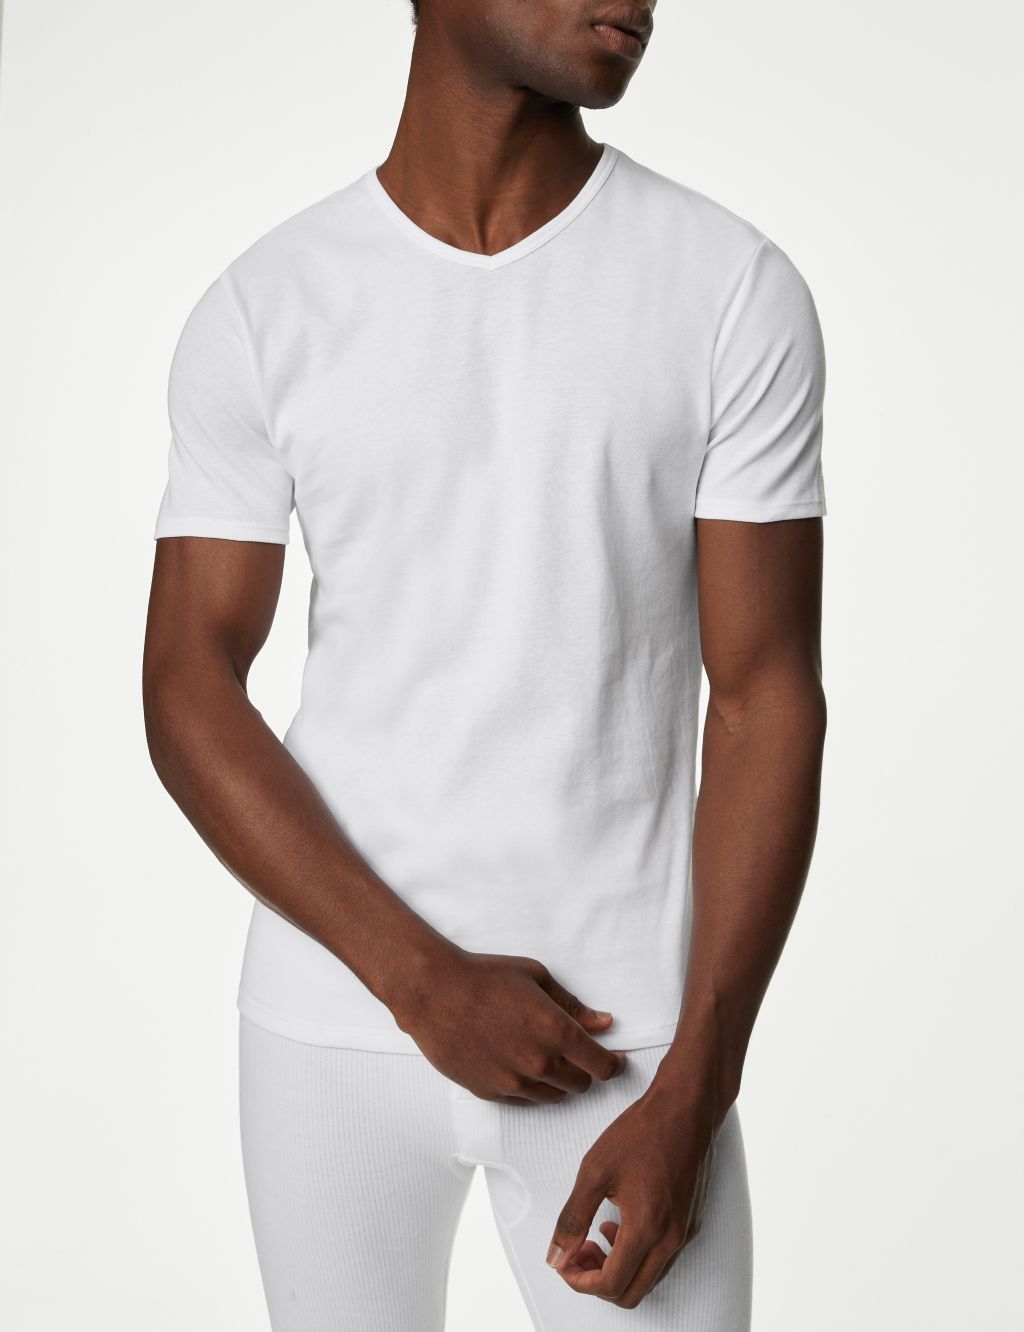 3pk Pure Cotton V-Neck T-Shirt Vests image 2